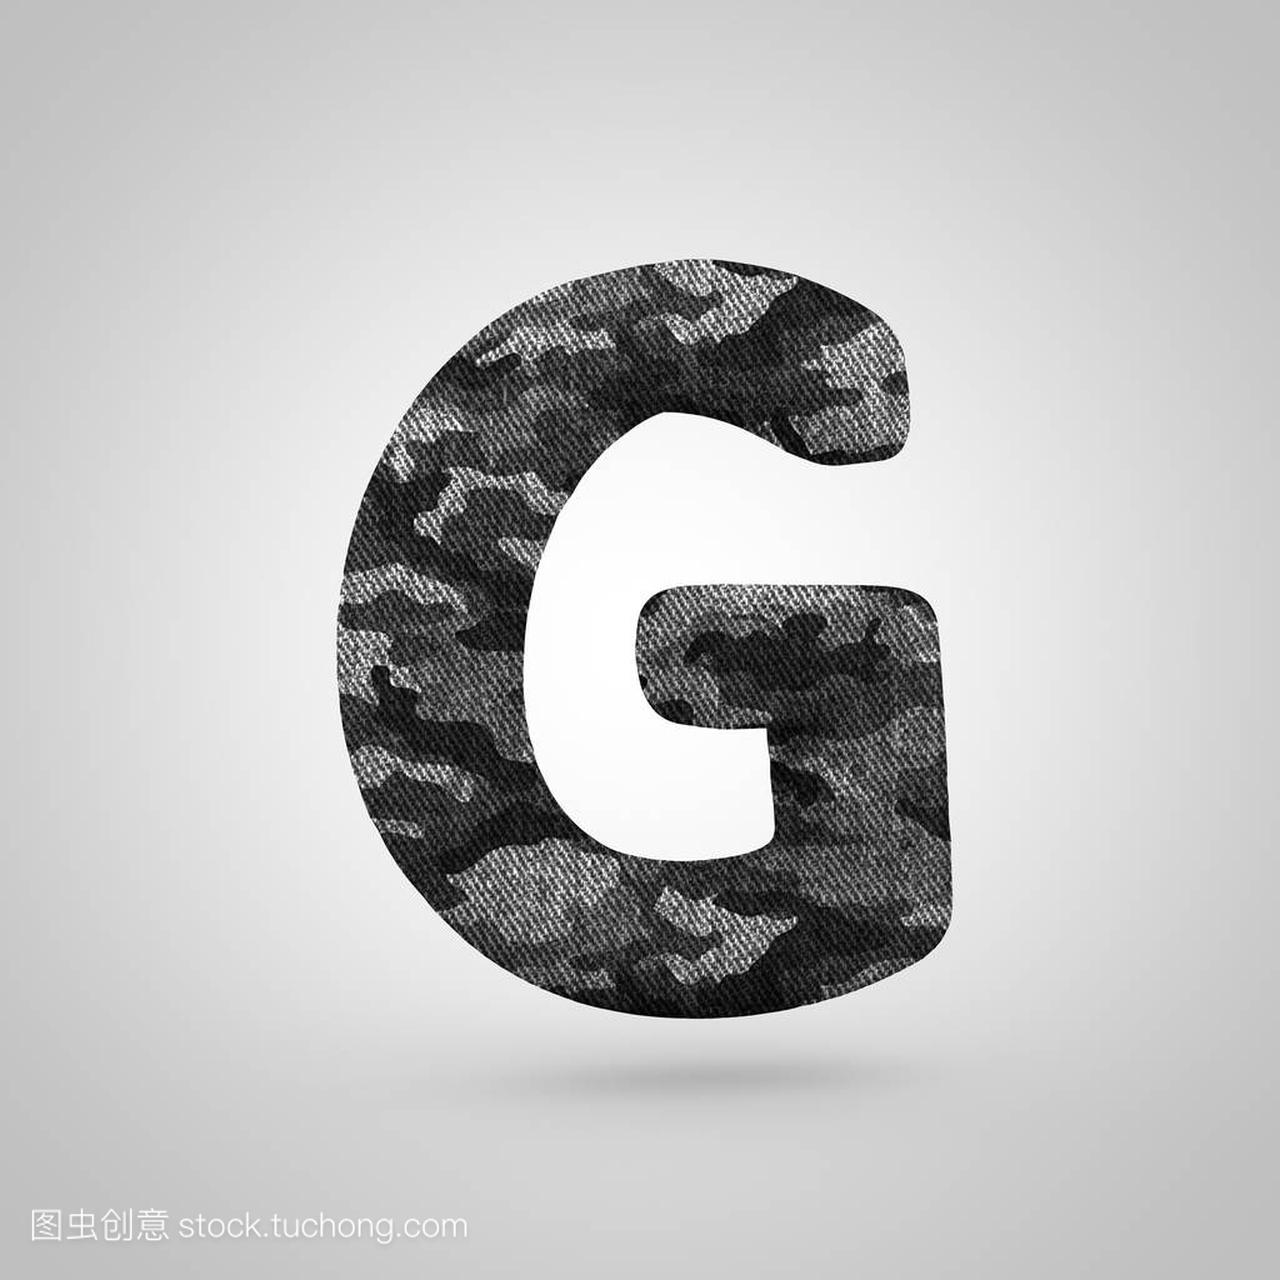 伪装字母 G 大写。3d 渲染字体与伪装纹理